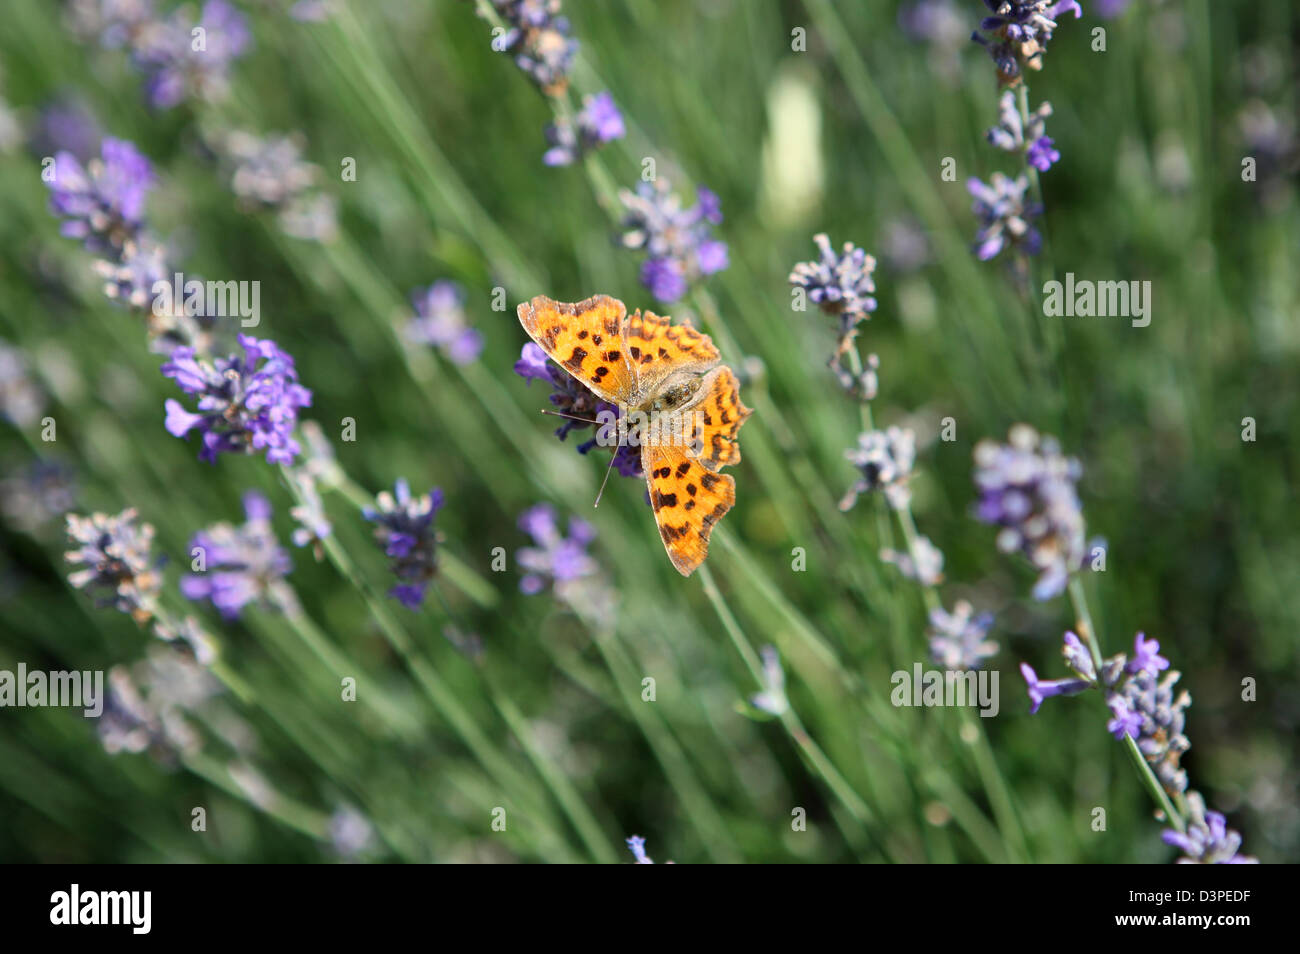 Coma mariposa descansando o alimentándose en flores de lavanda inglesa Foto de stock